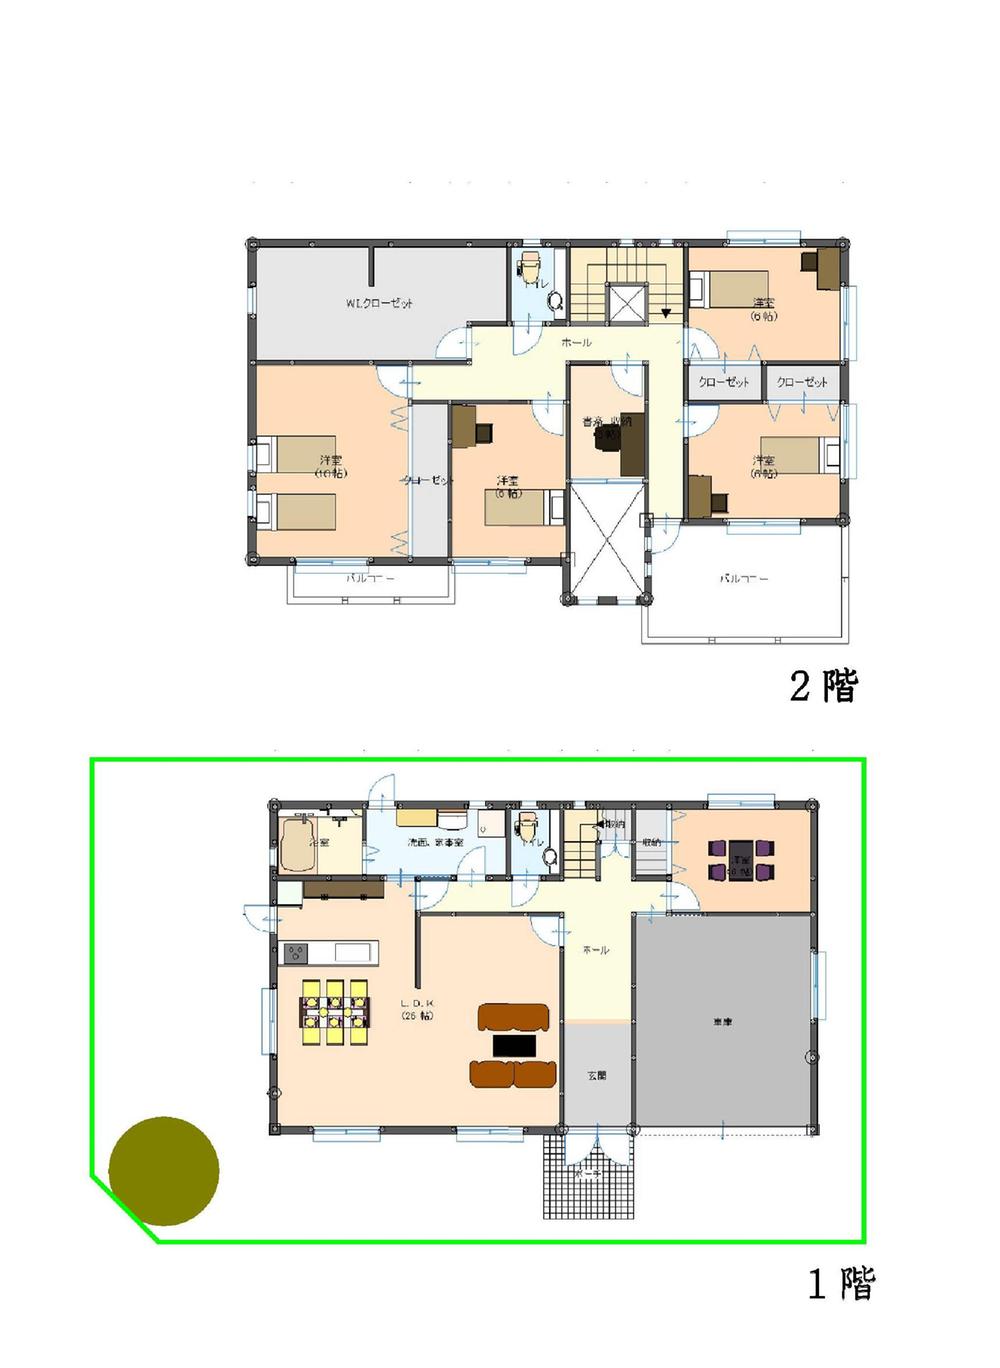 Floor plan. 79,800,000 yen, 5LDK + S (storeroom), Land area 233.86 sq m , Building area 202.88 sq m floor plan